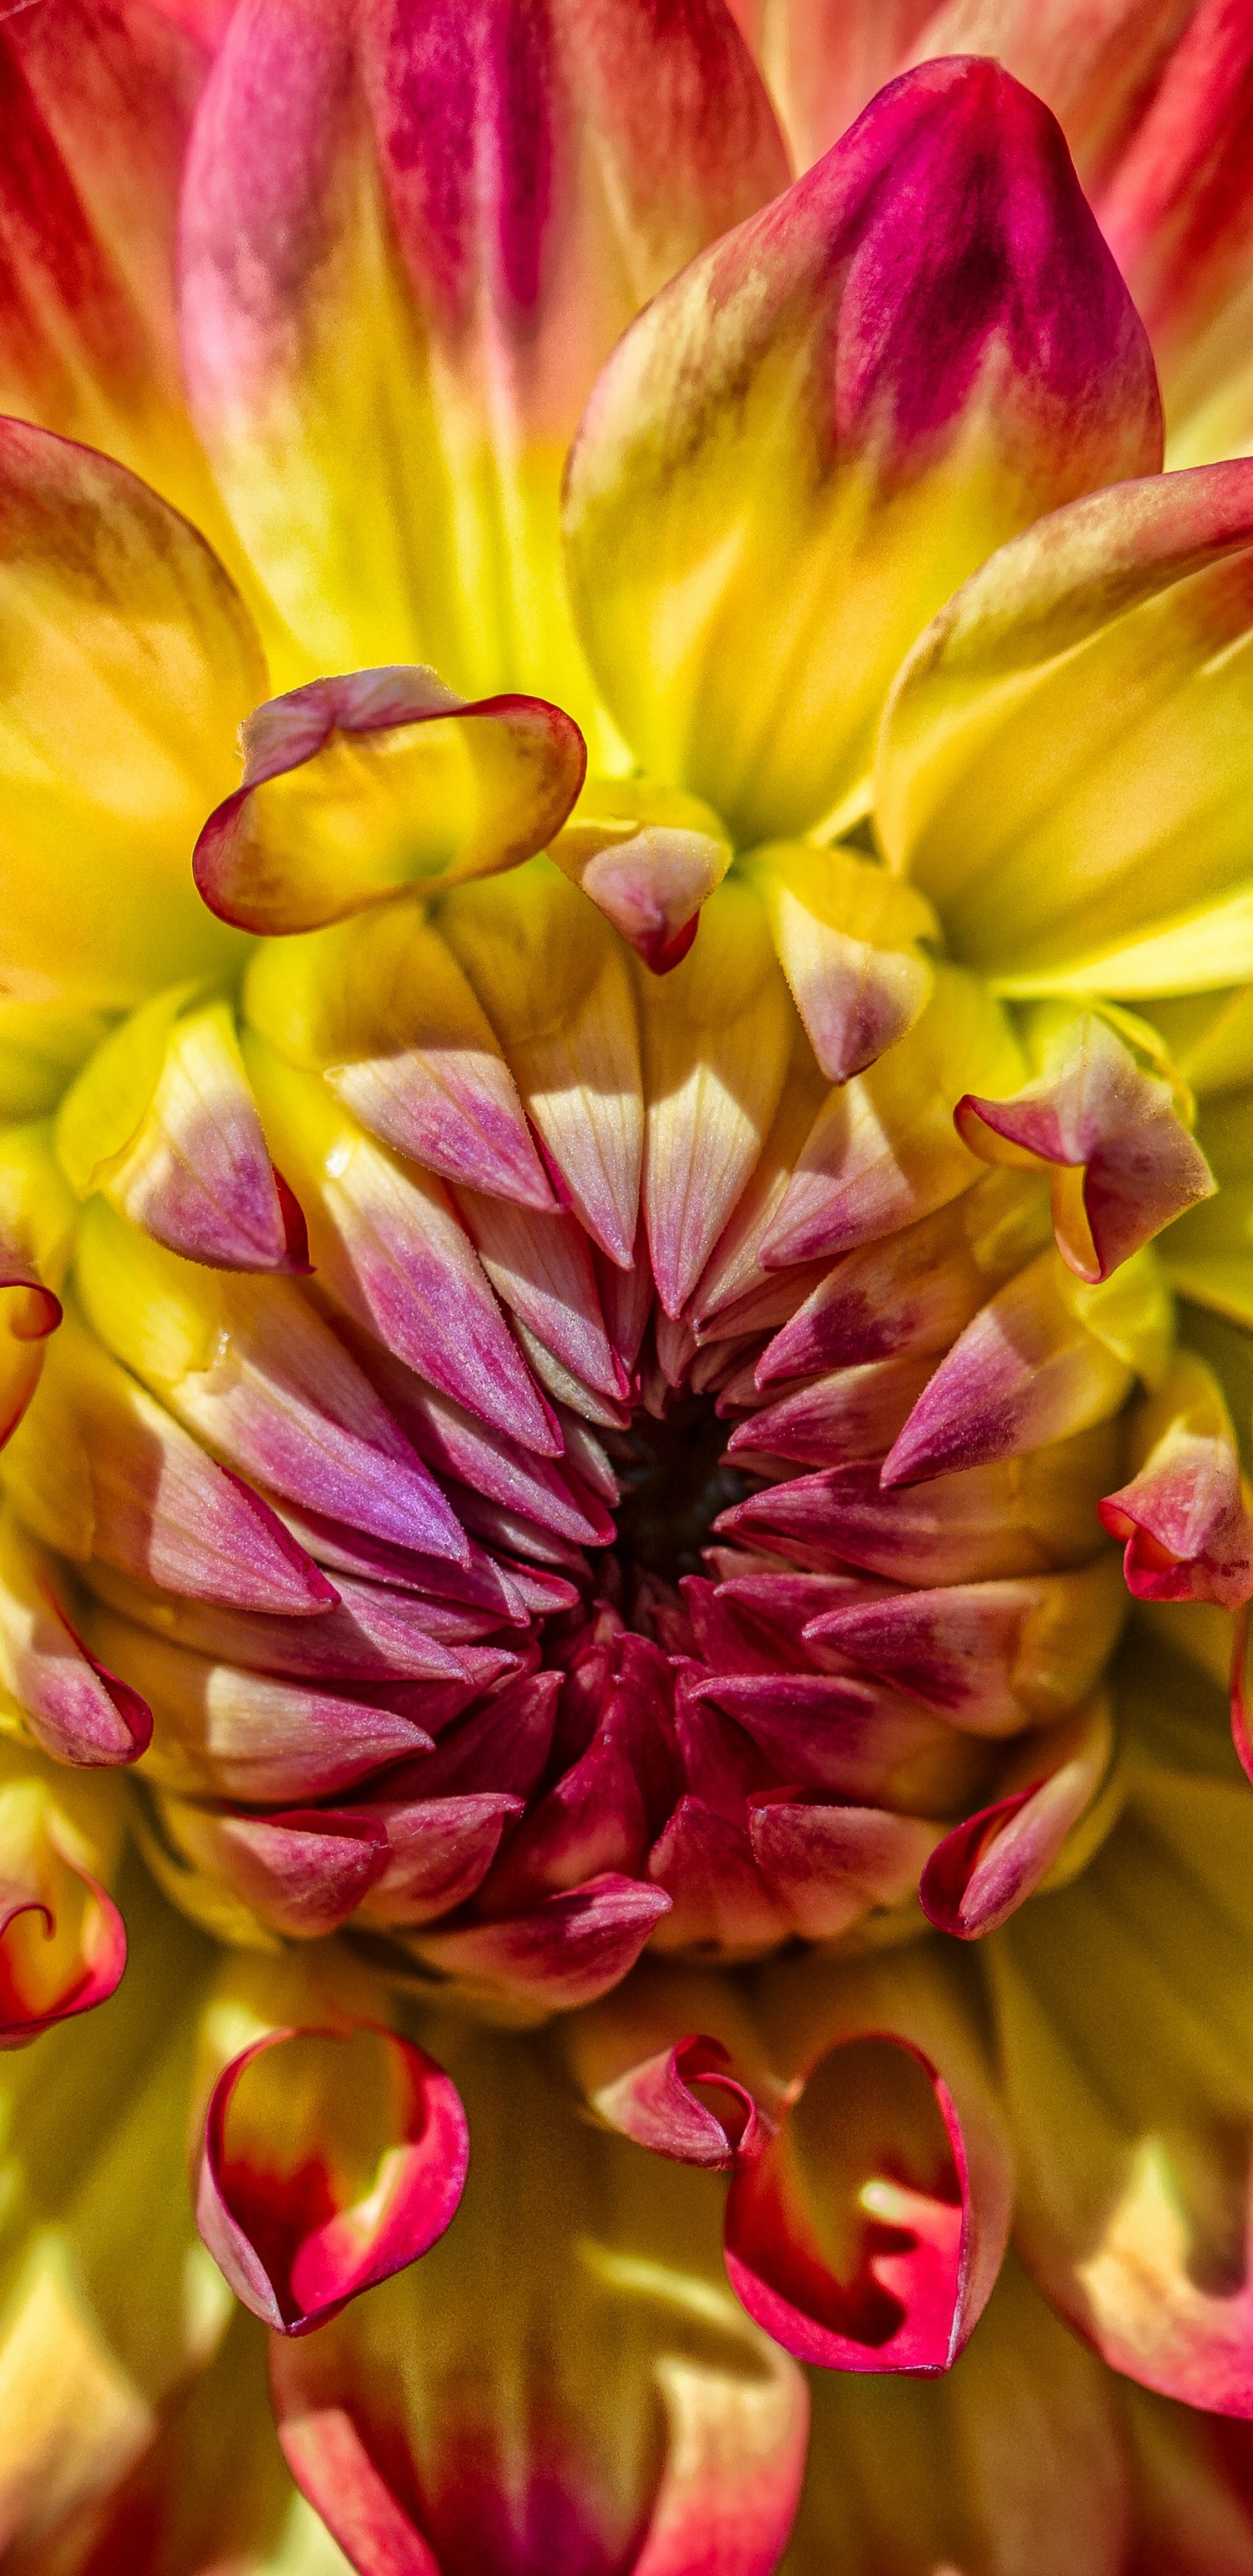 Rosa Und Gelbe Blume in Der Makrofotografie. Wallpaper in 1440x2960 Resolution